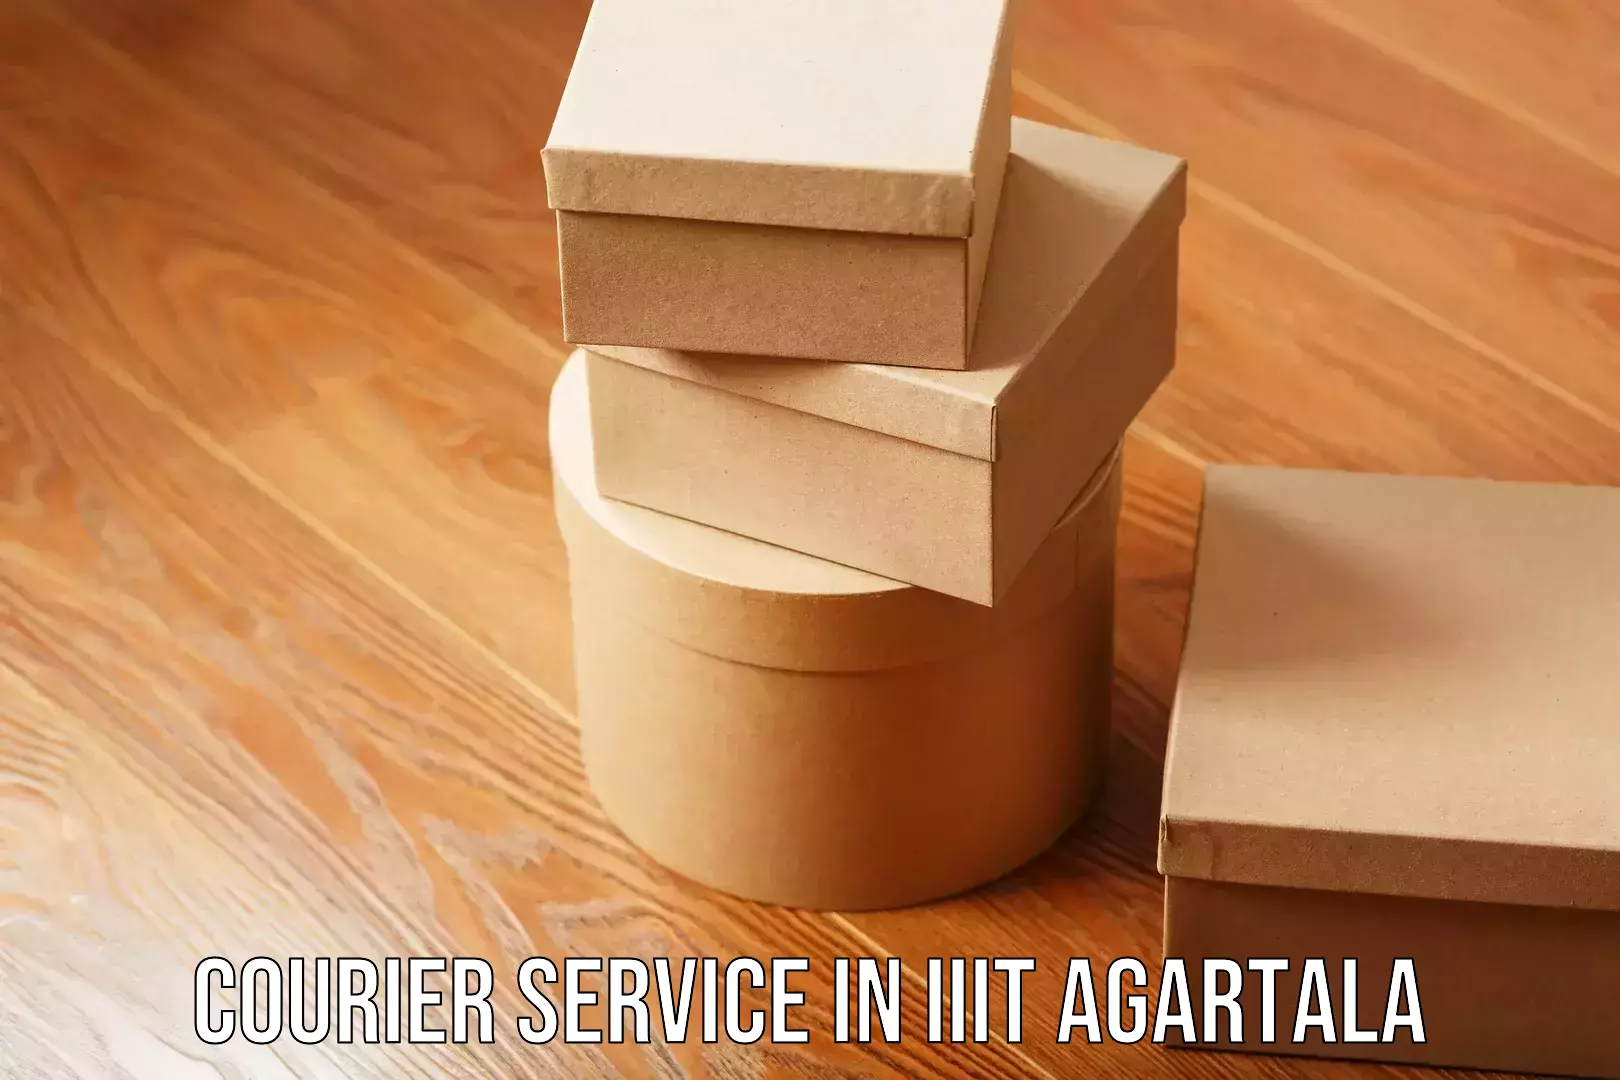 Advanced shipping network in IIIT Agartala